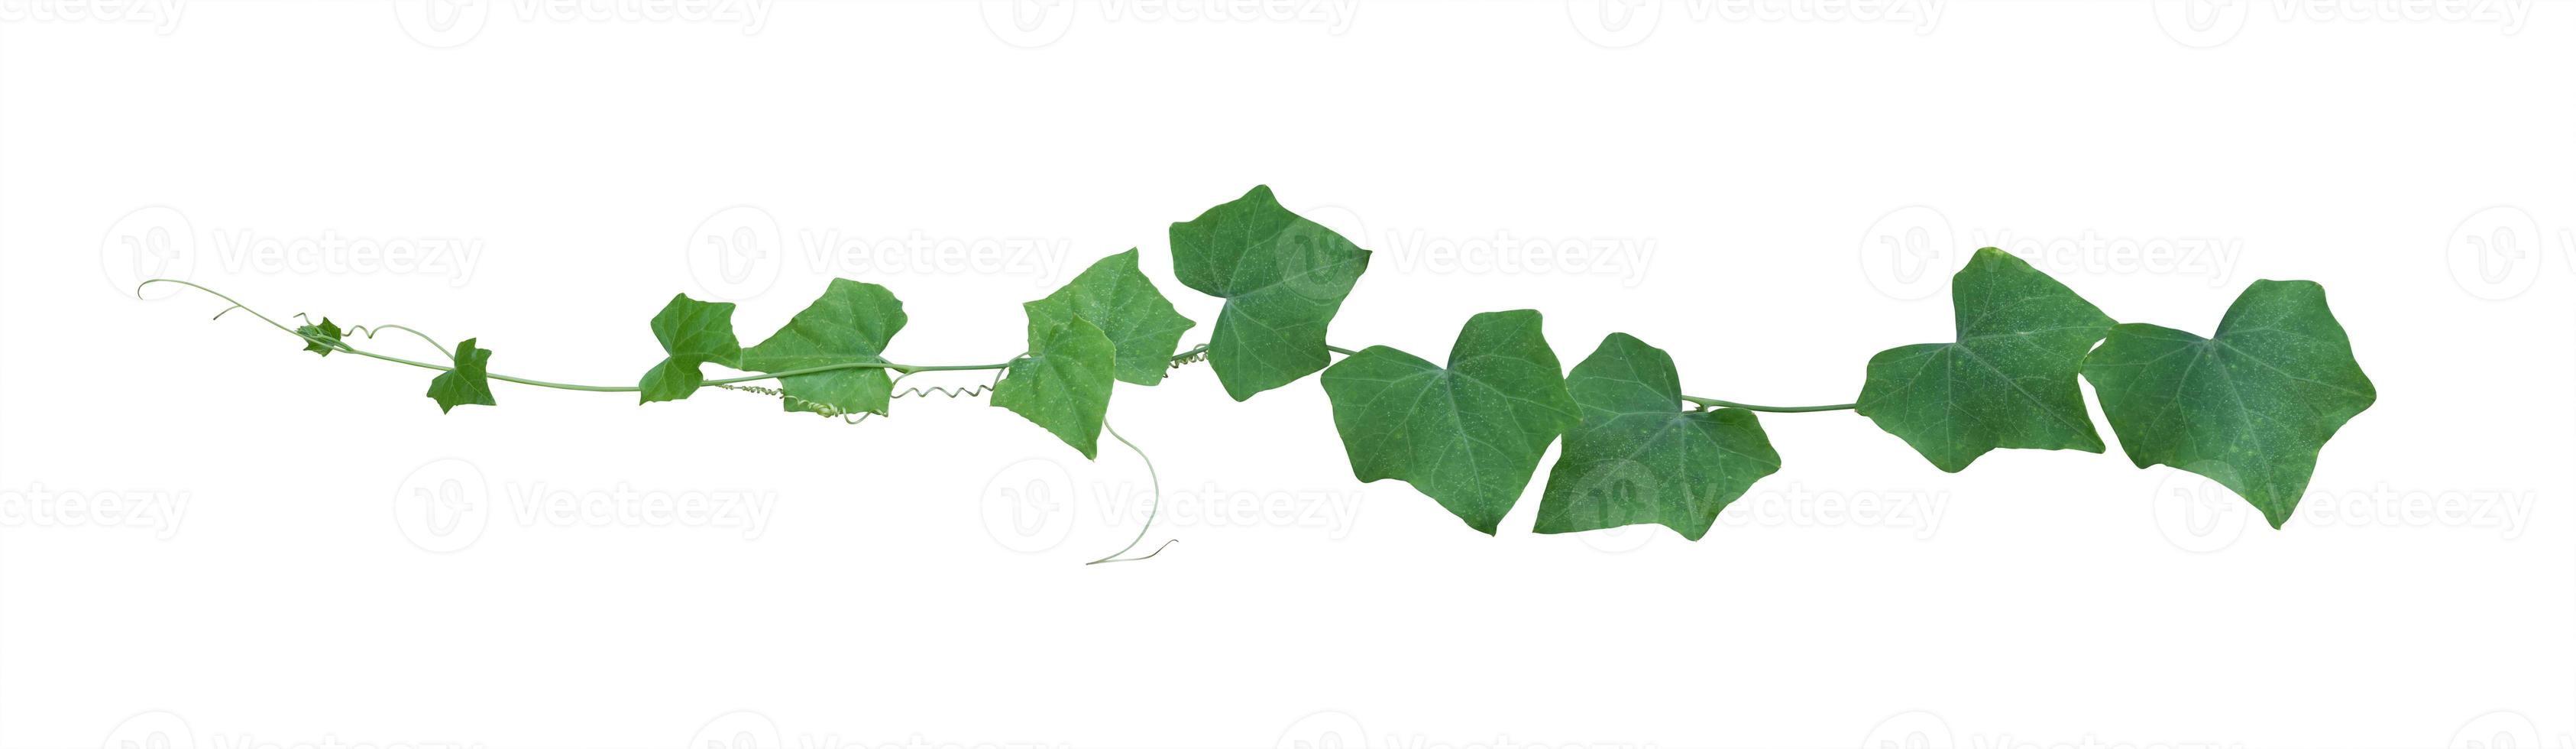 Weinblätter, Efeupflanze isoliert auf weißem Hintergrund, Beschneidungspfad foto